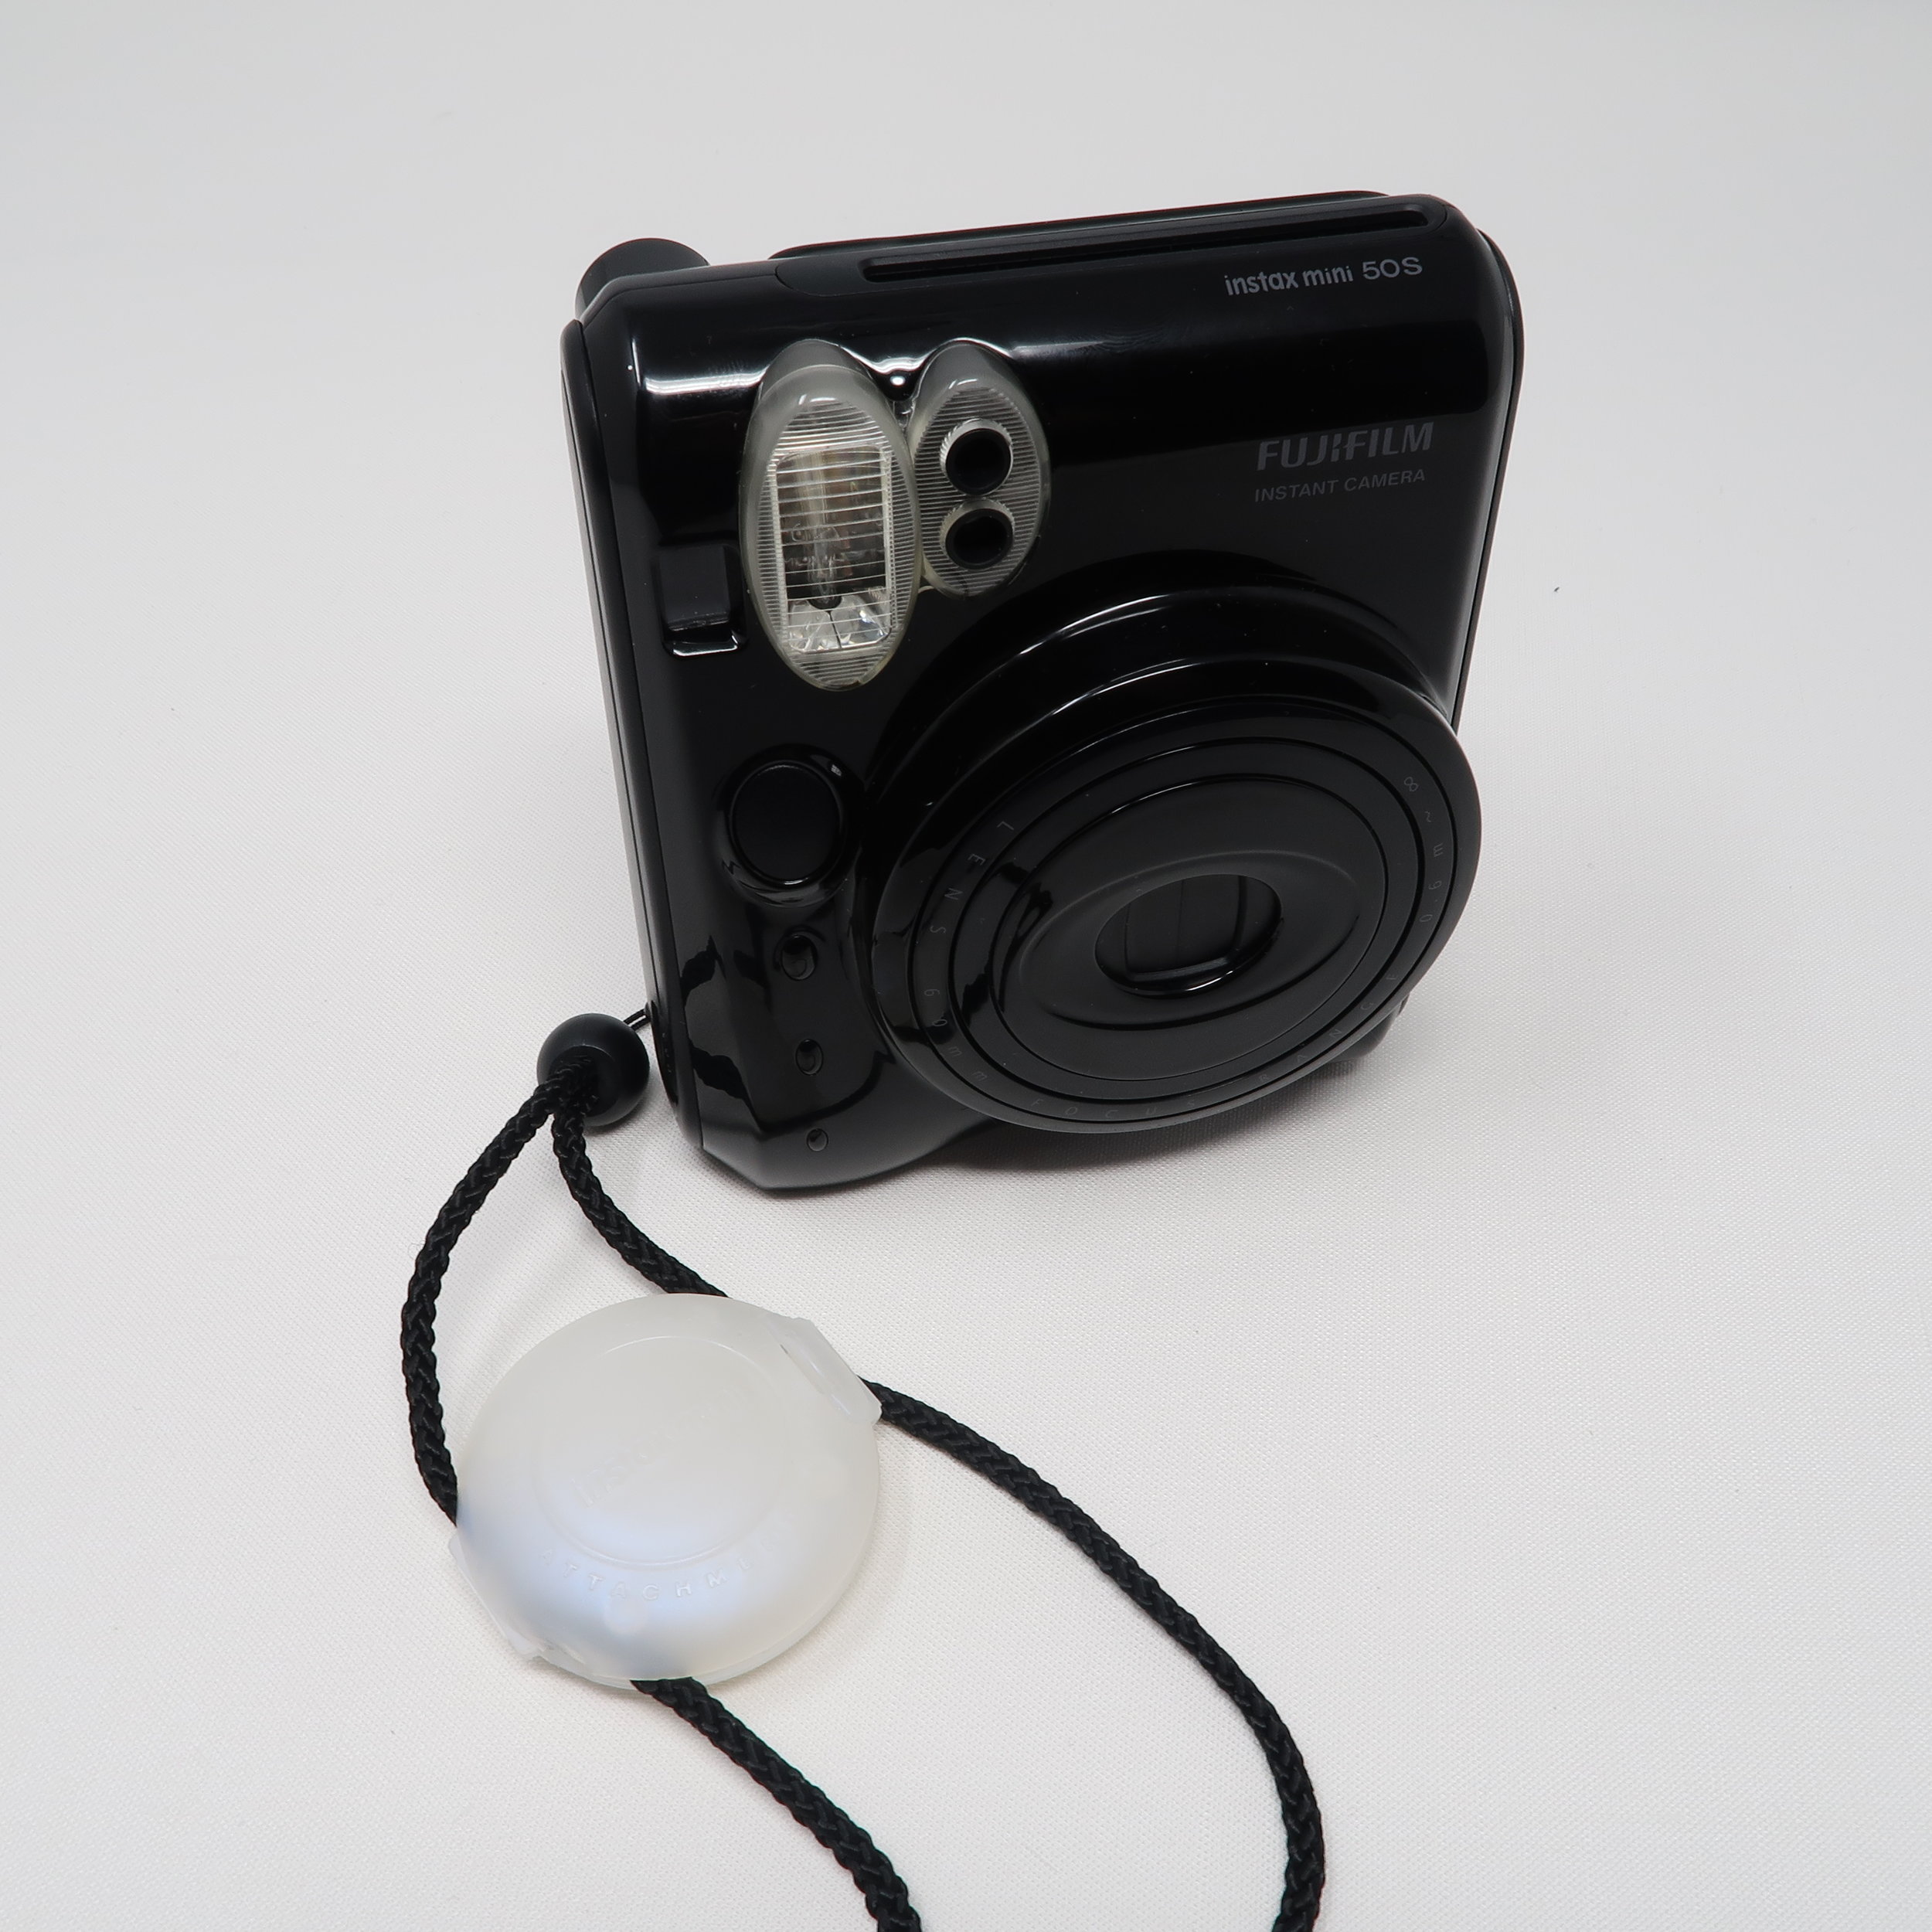 Fuji-Instax-Mini-50S-Macro-Lens.jpg